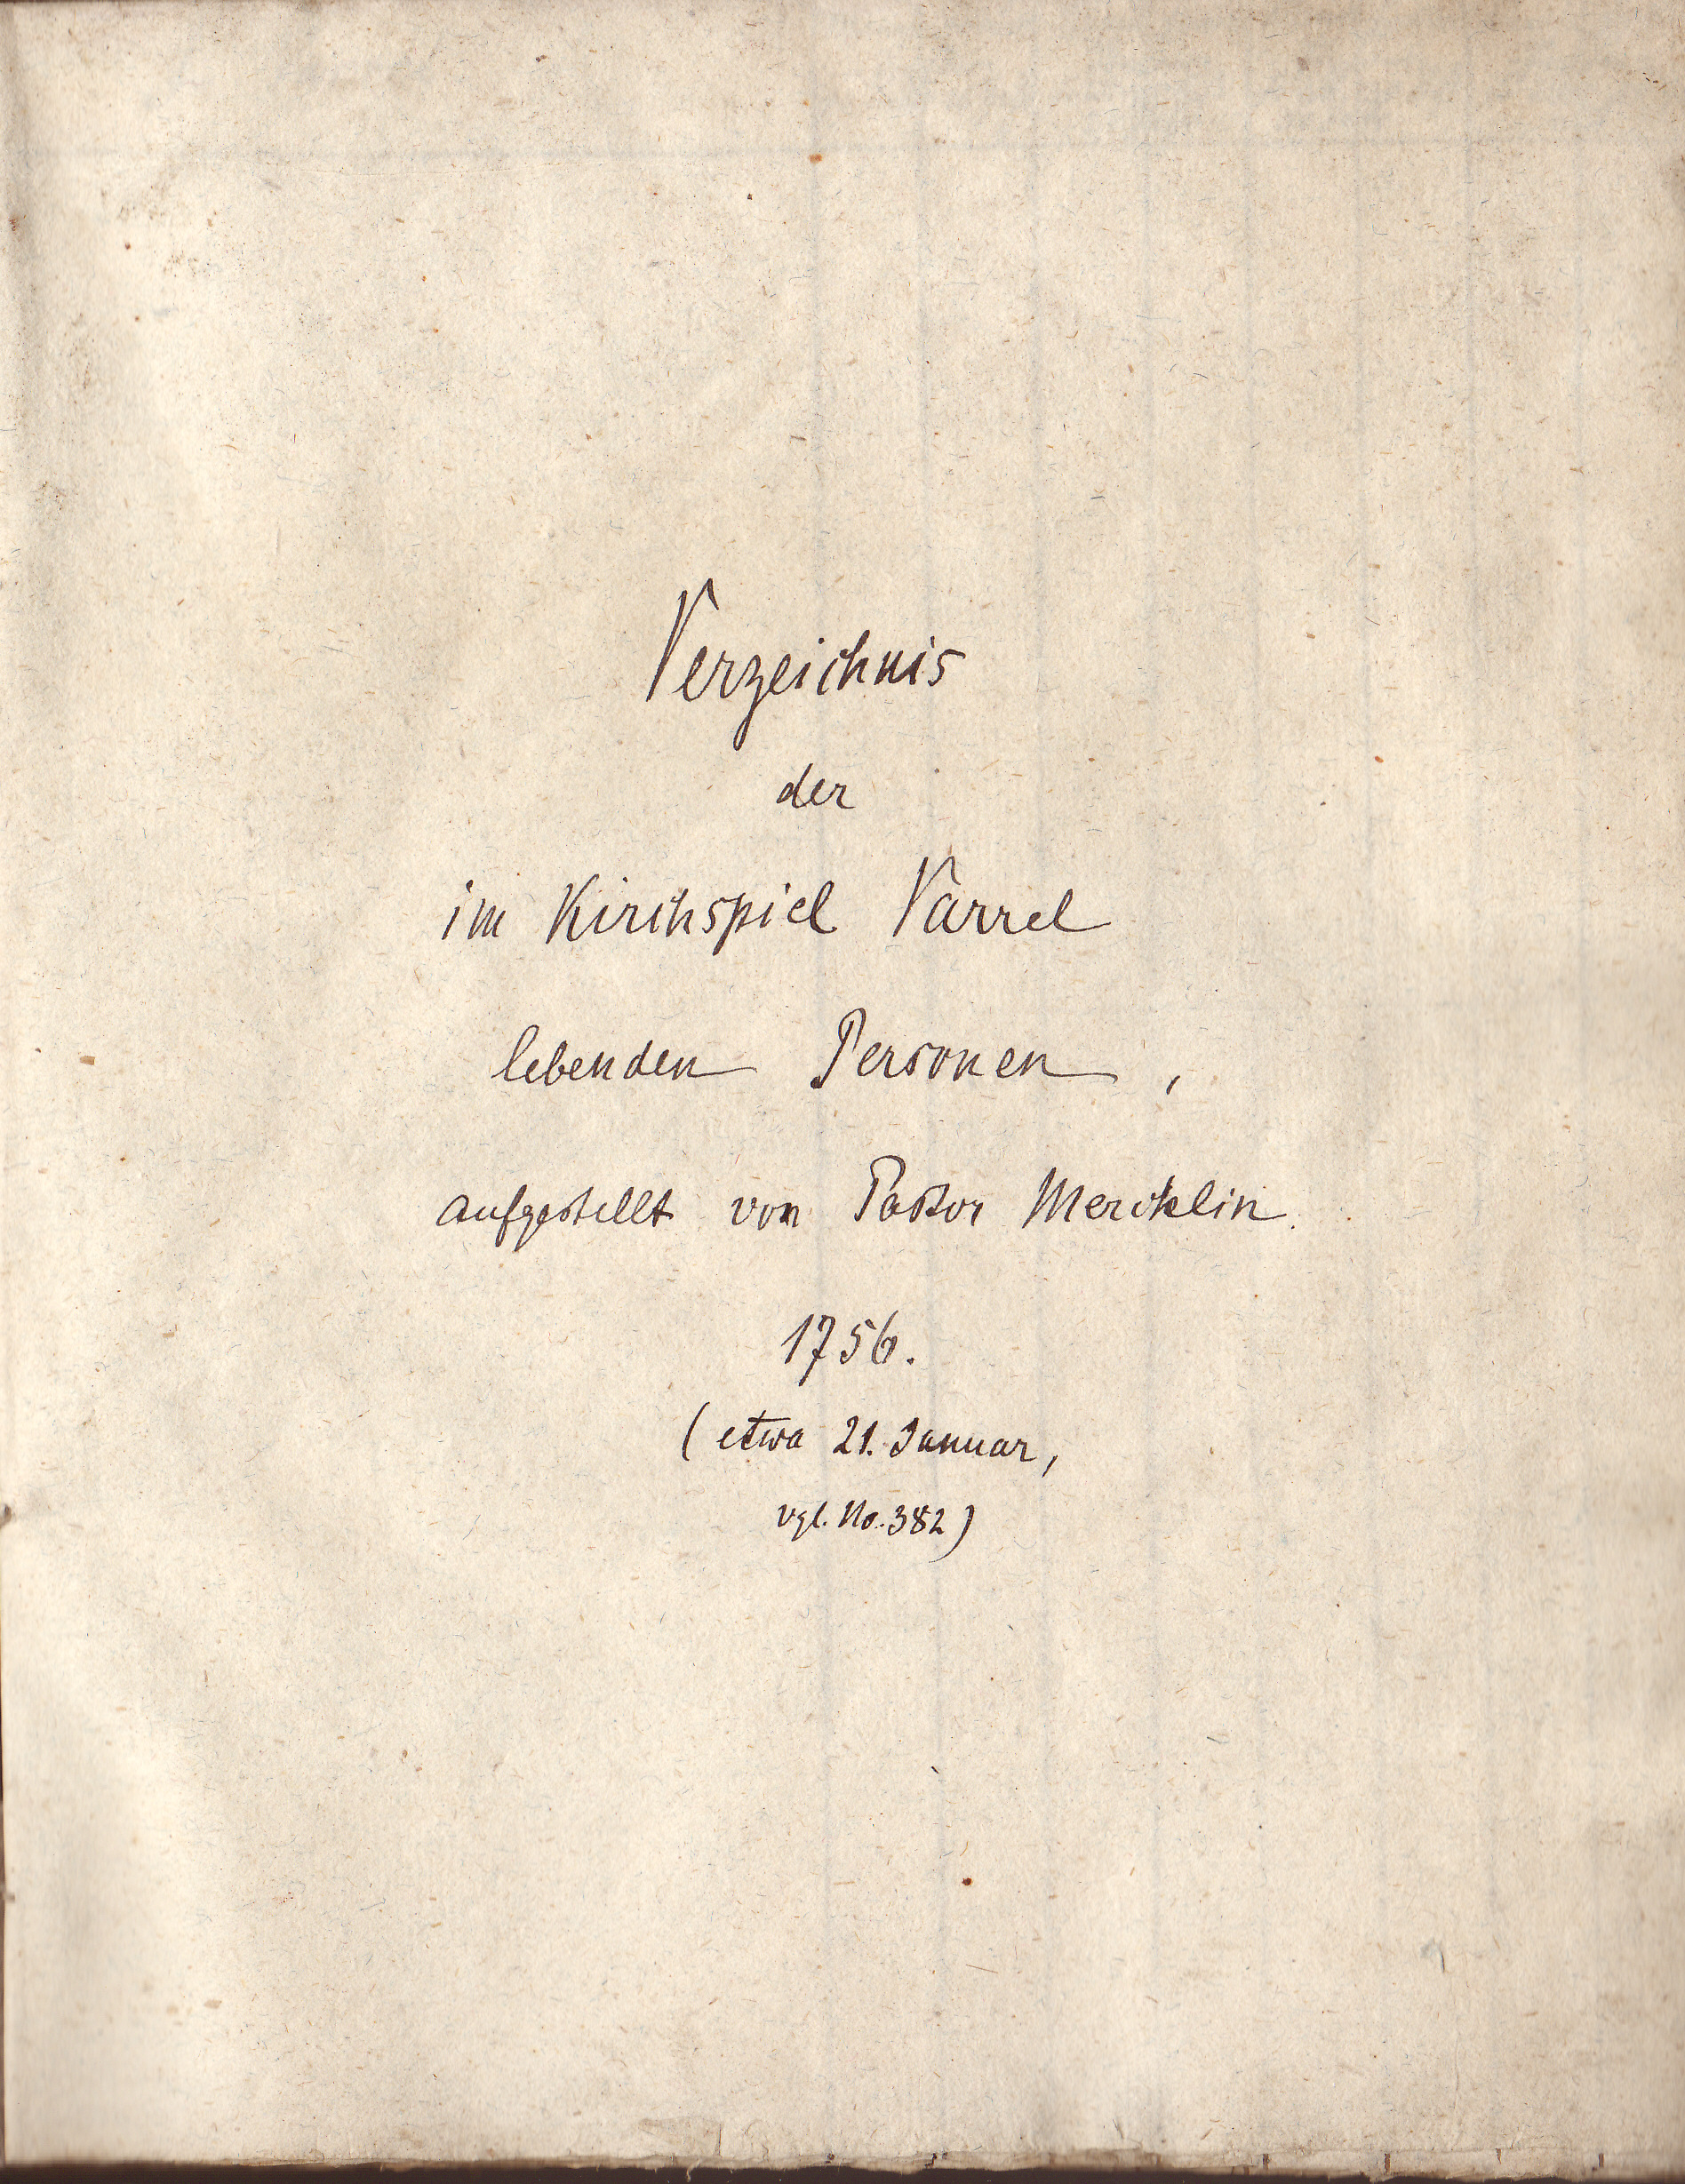 1- Einwohnerliste Reg. 1756 Ksp. Varrel / Verzeichnis der im Kirchspiel Varrel lebenden Personen (Kreismuseum Syke CC BY-NC-SA)